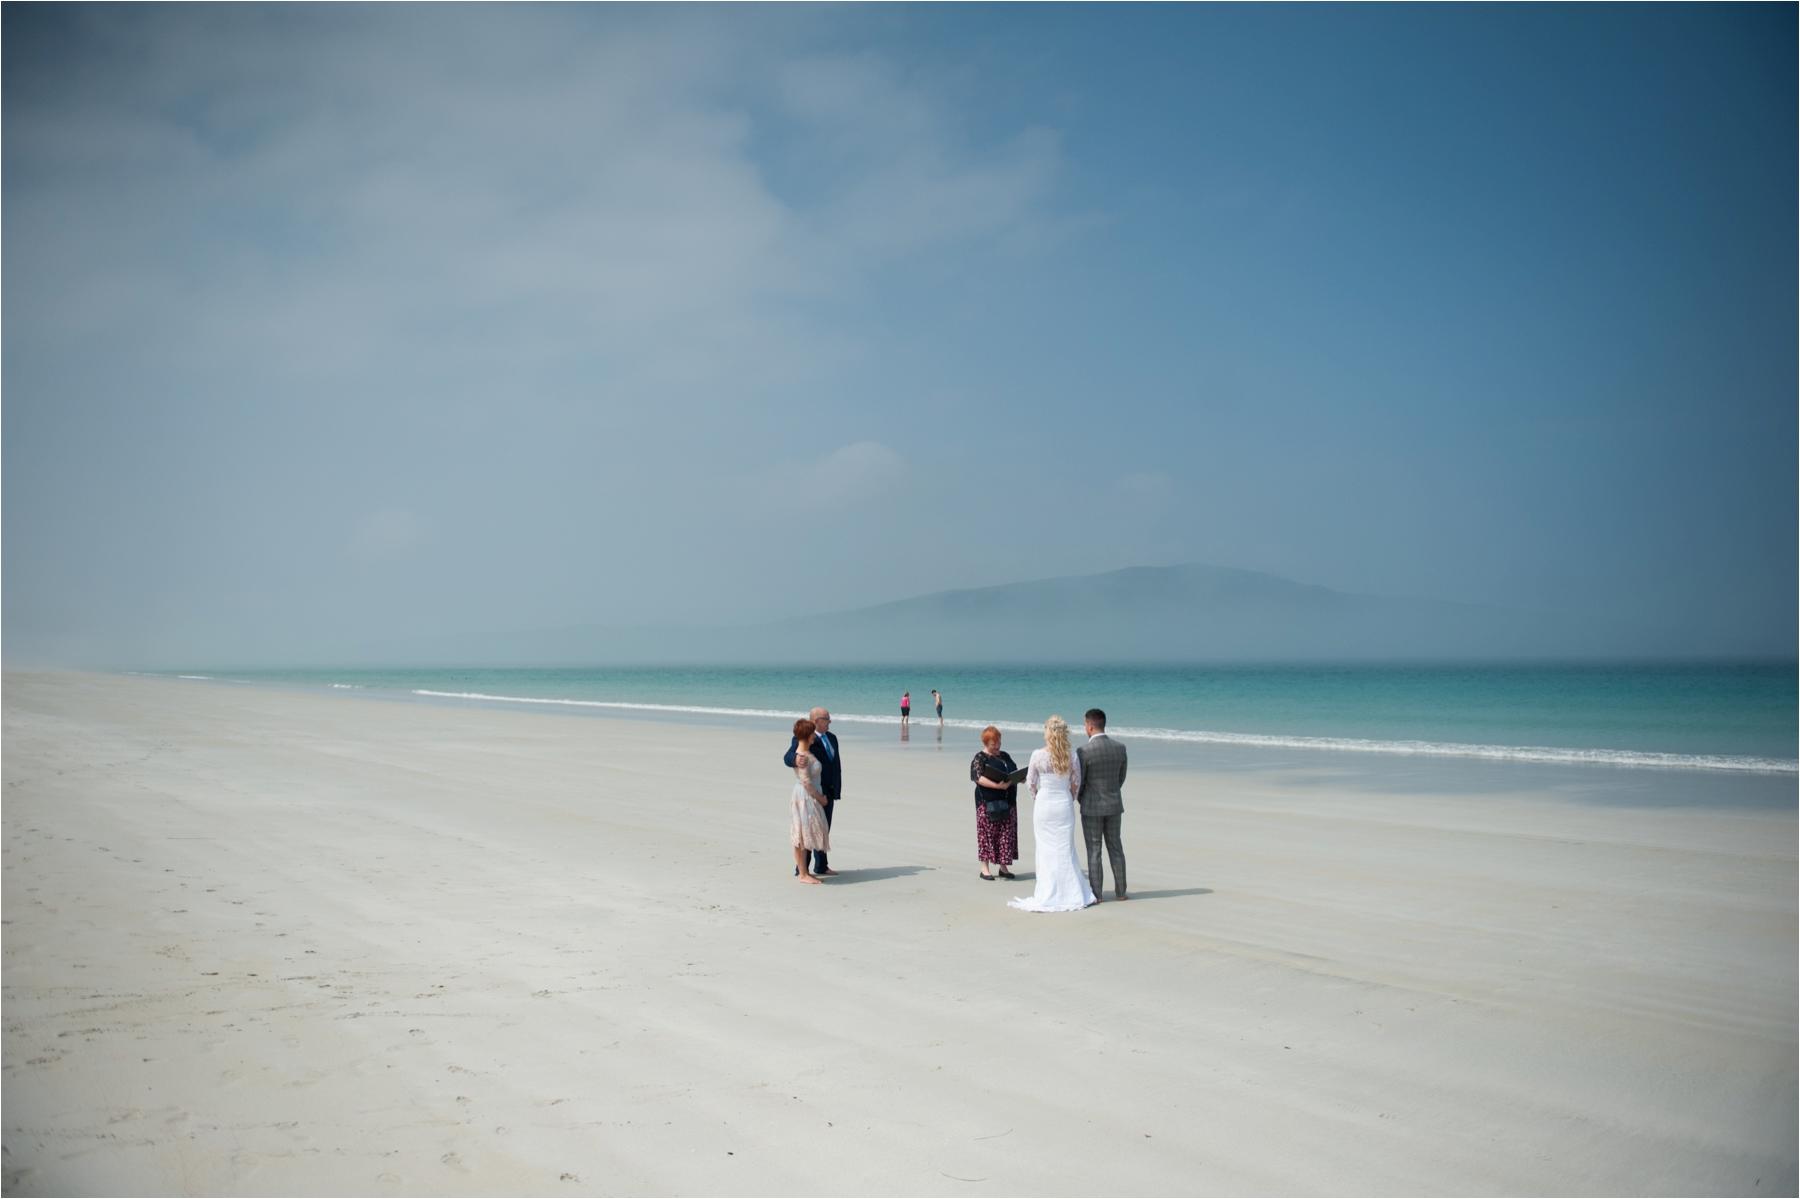 Scottish island wedding photography